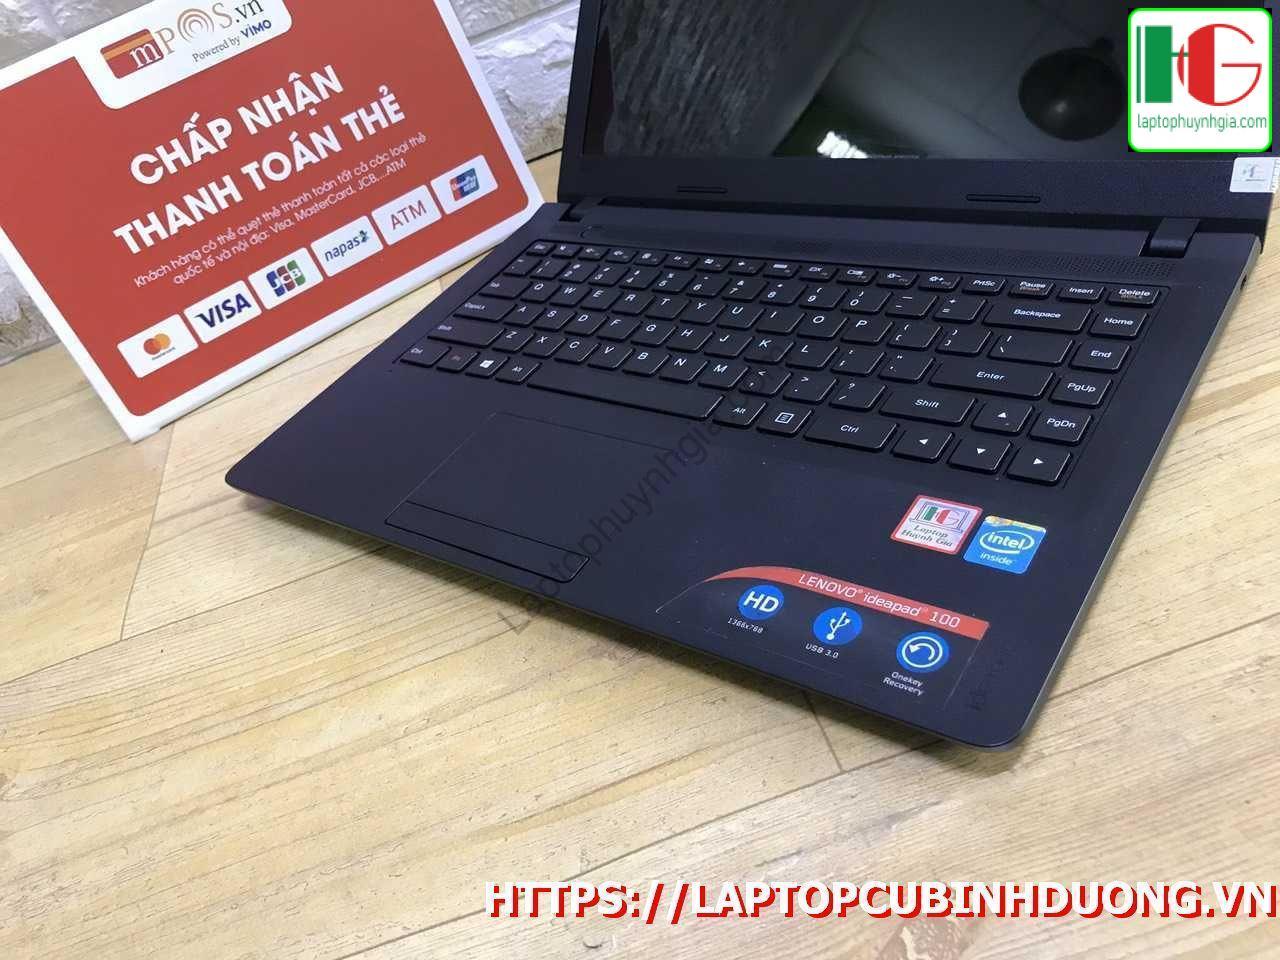 Lenovo Ipdead N2840 4g 500g Laptopcubinhduong.vn 5 [kích Thước Gốc] Result